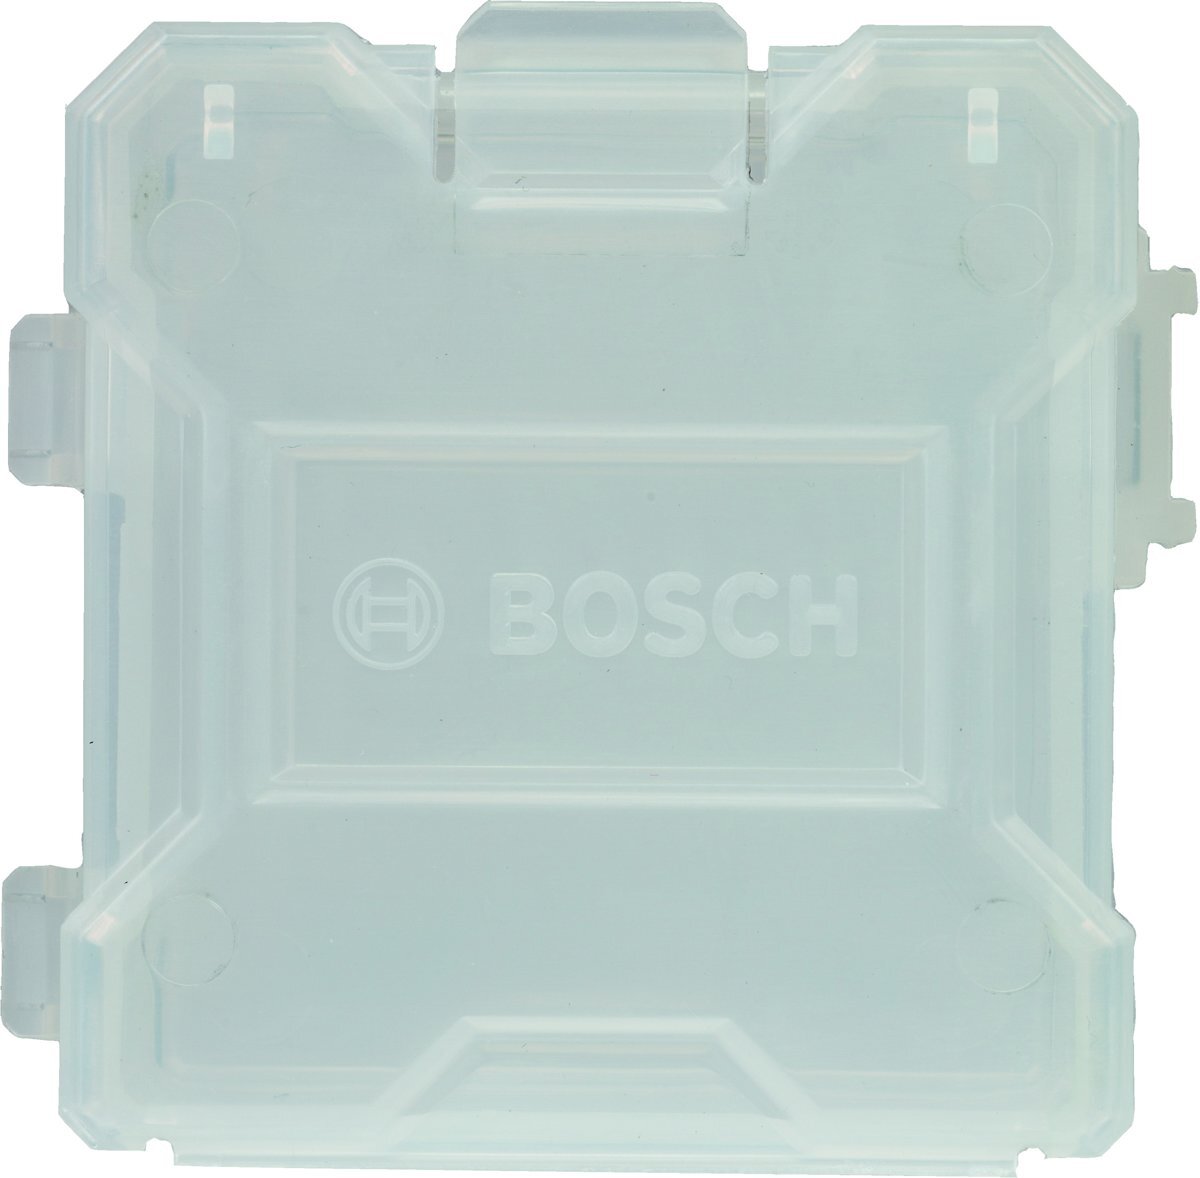 Bosch Empty Box in Box 1pc